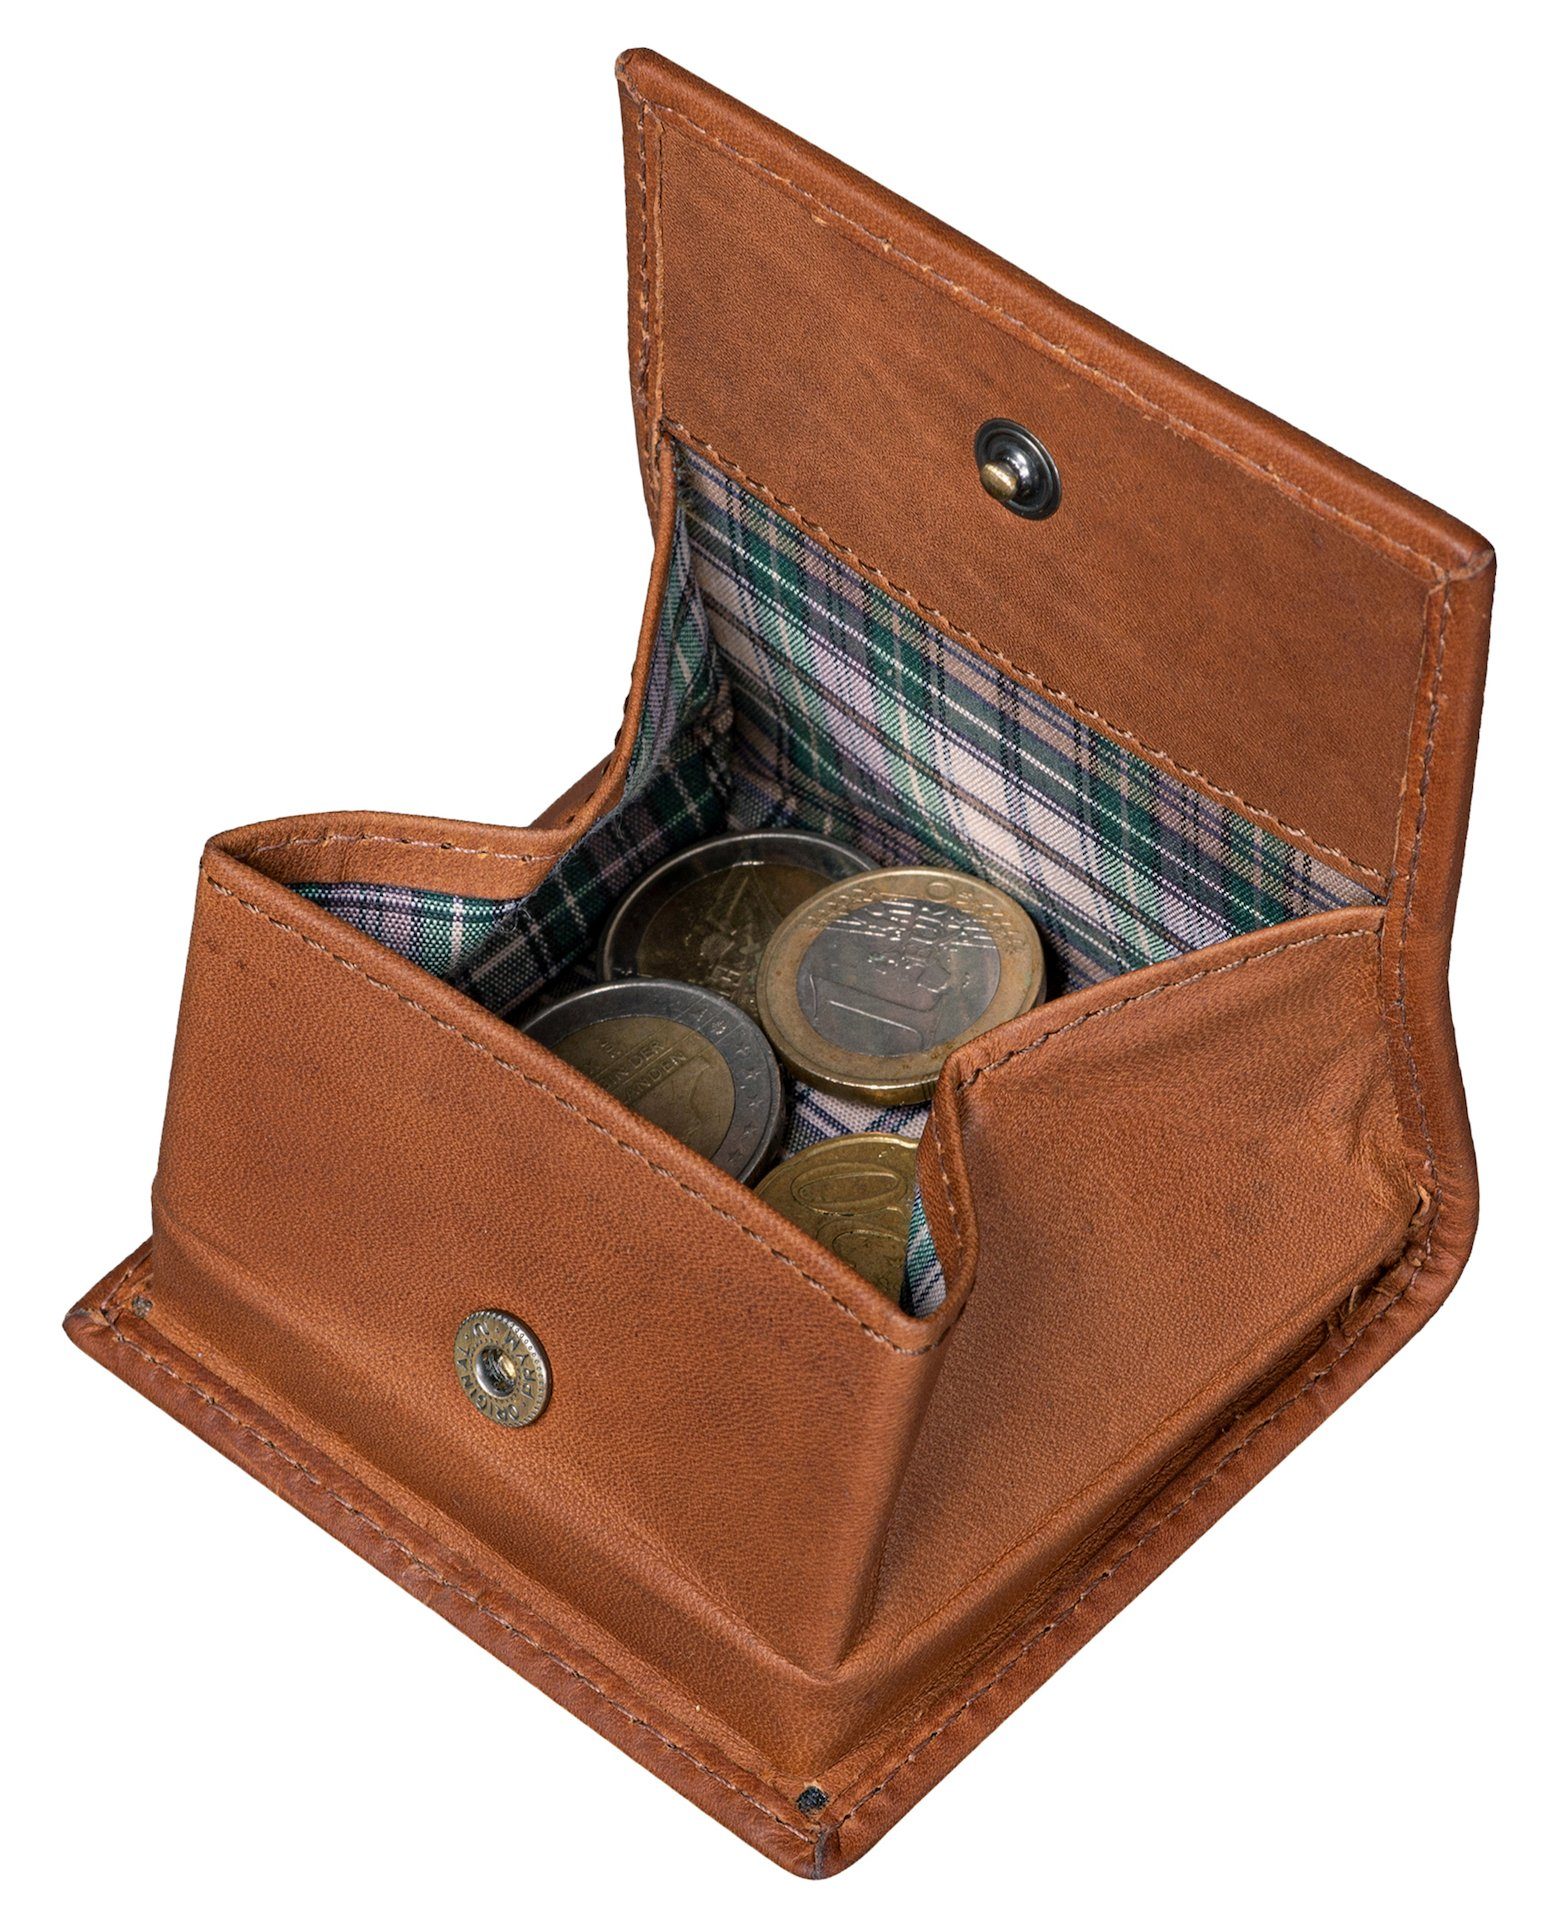 Benthill Mini Geldbörse Kleingeldschütte Münzfach Slim Wallet Leder Echt mit Münzen, für Münzbörse